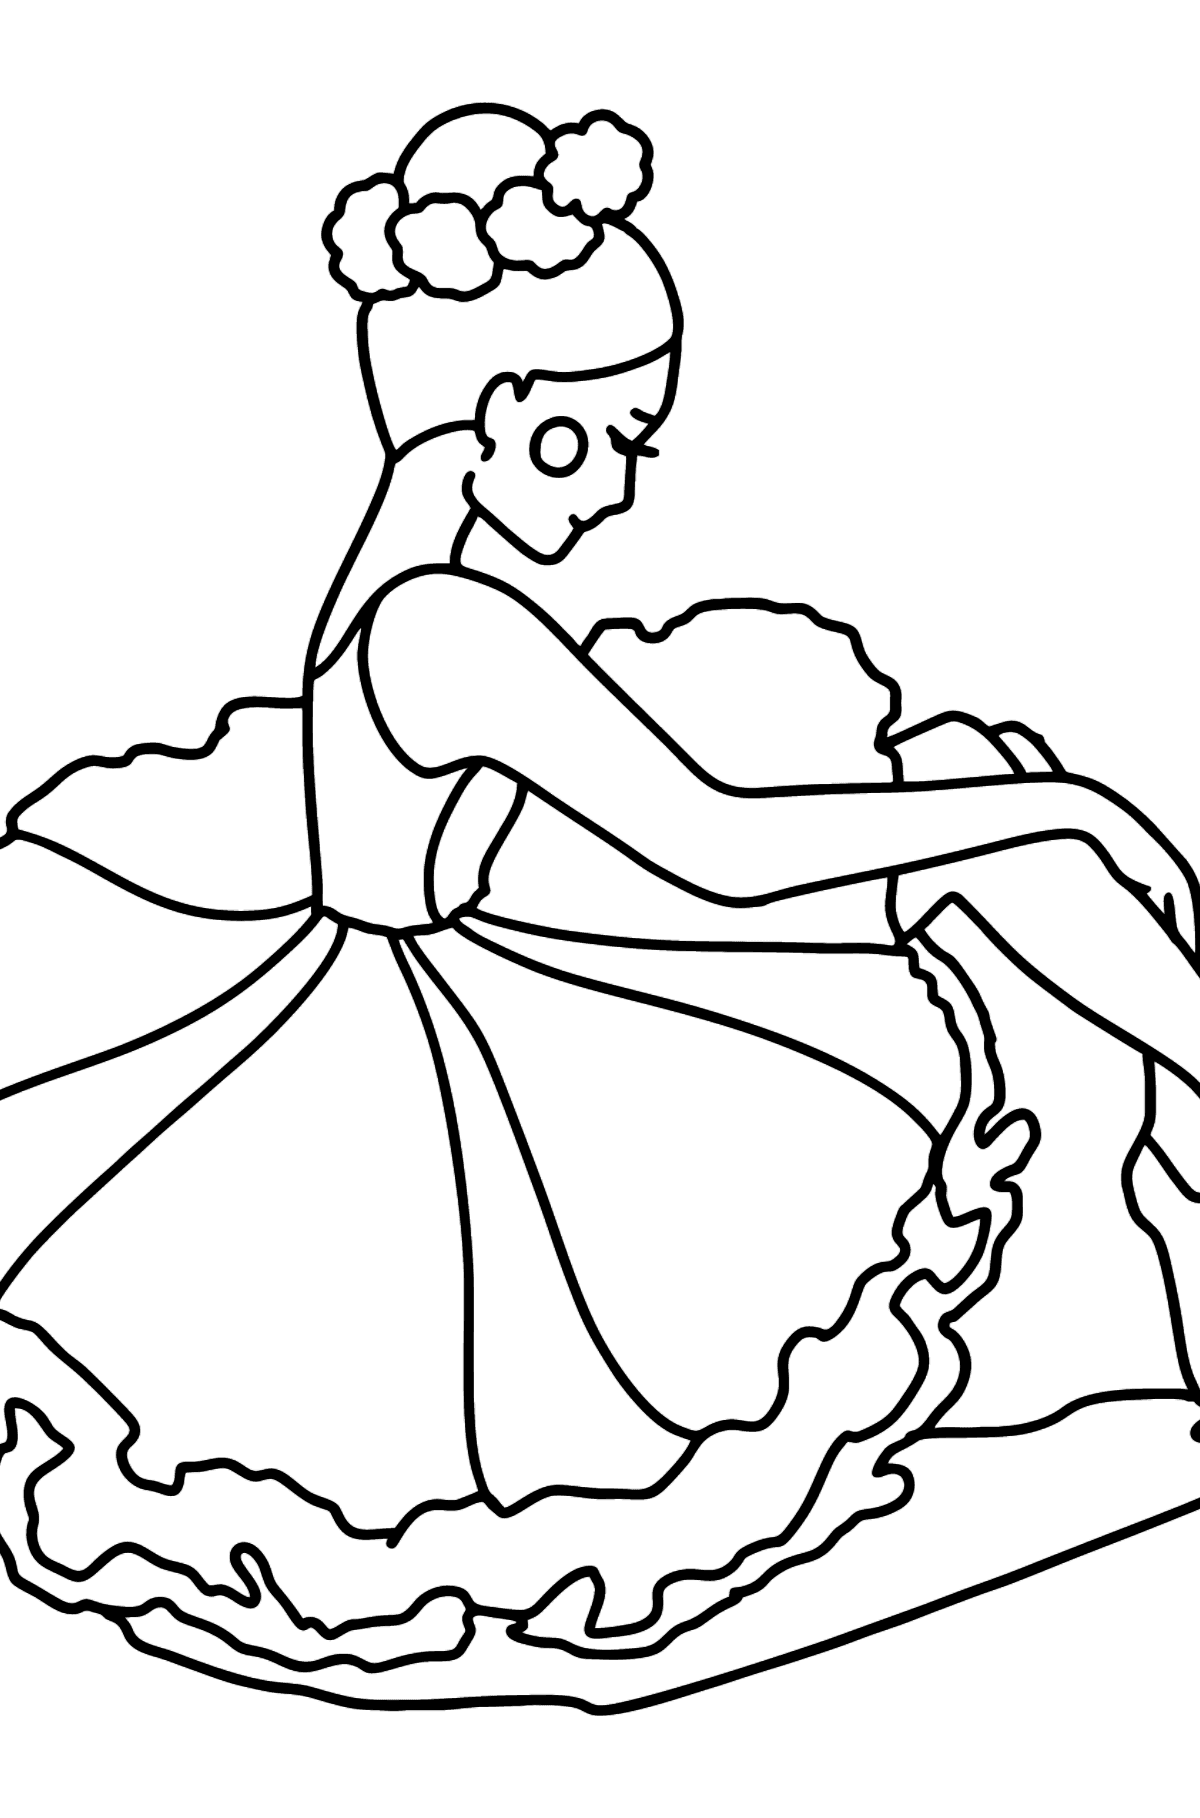 Coloriage - Ballerine dans une robe luxuriante - Coloriages pour les Enfants